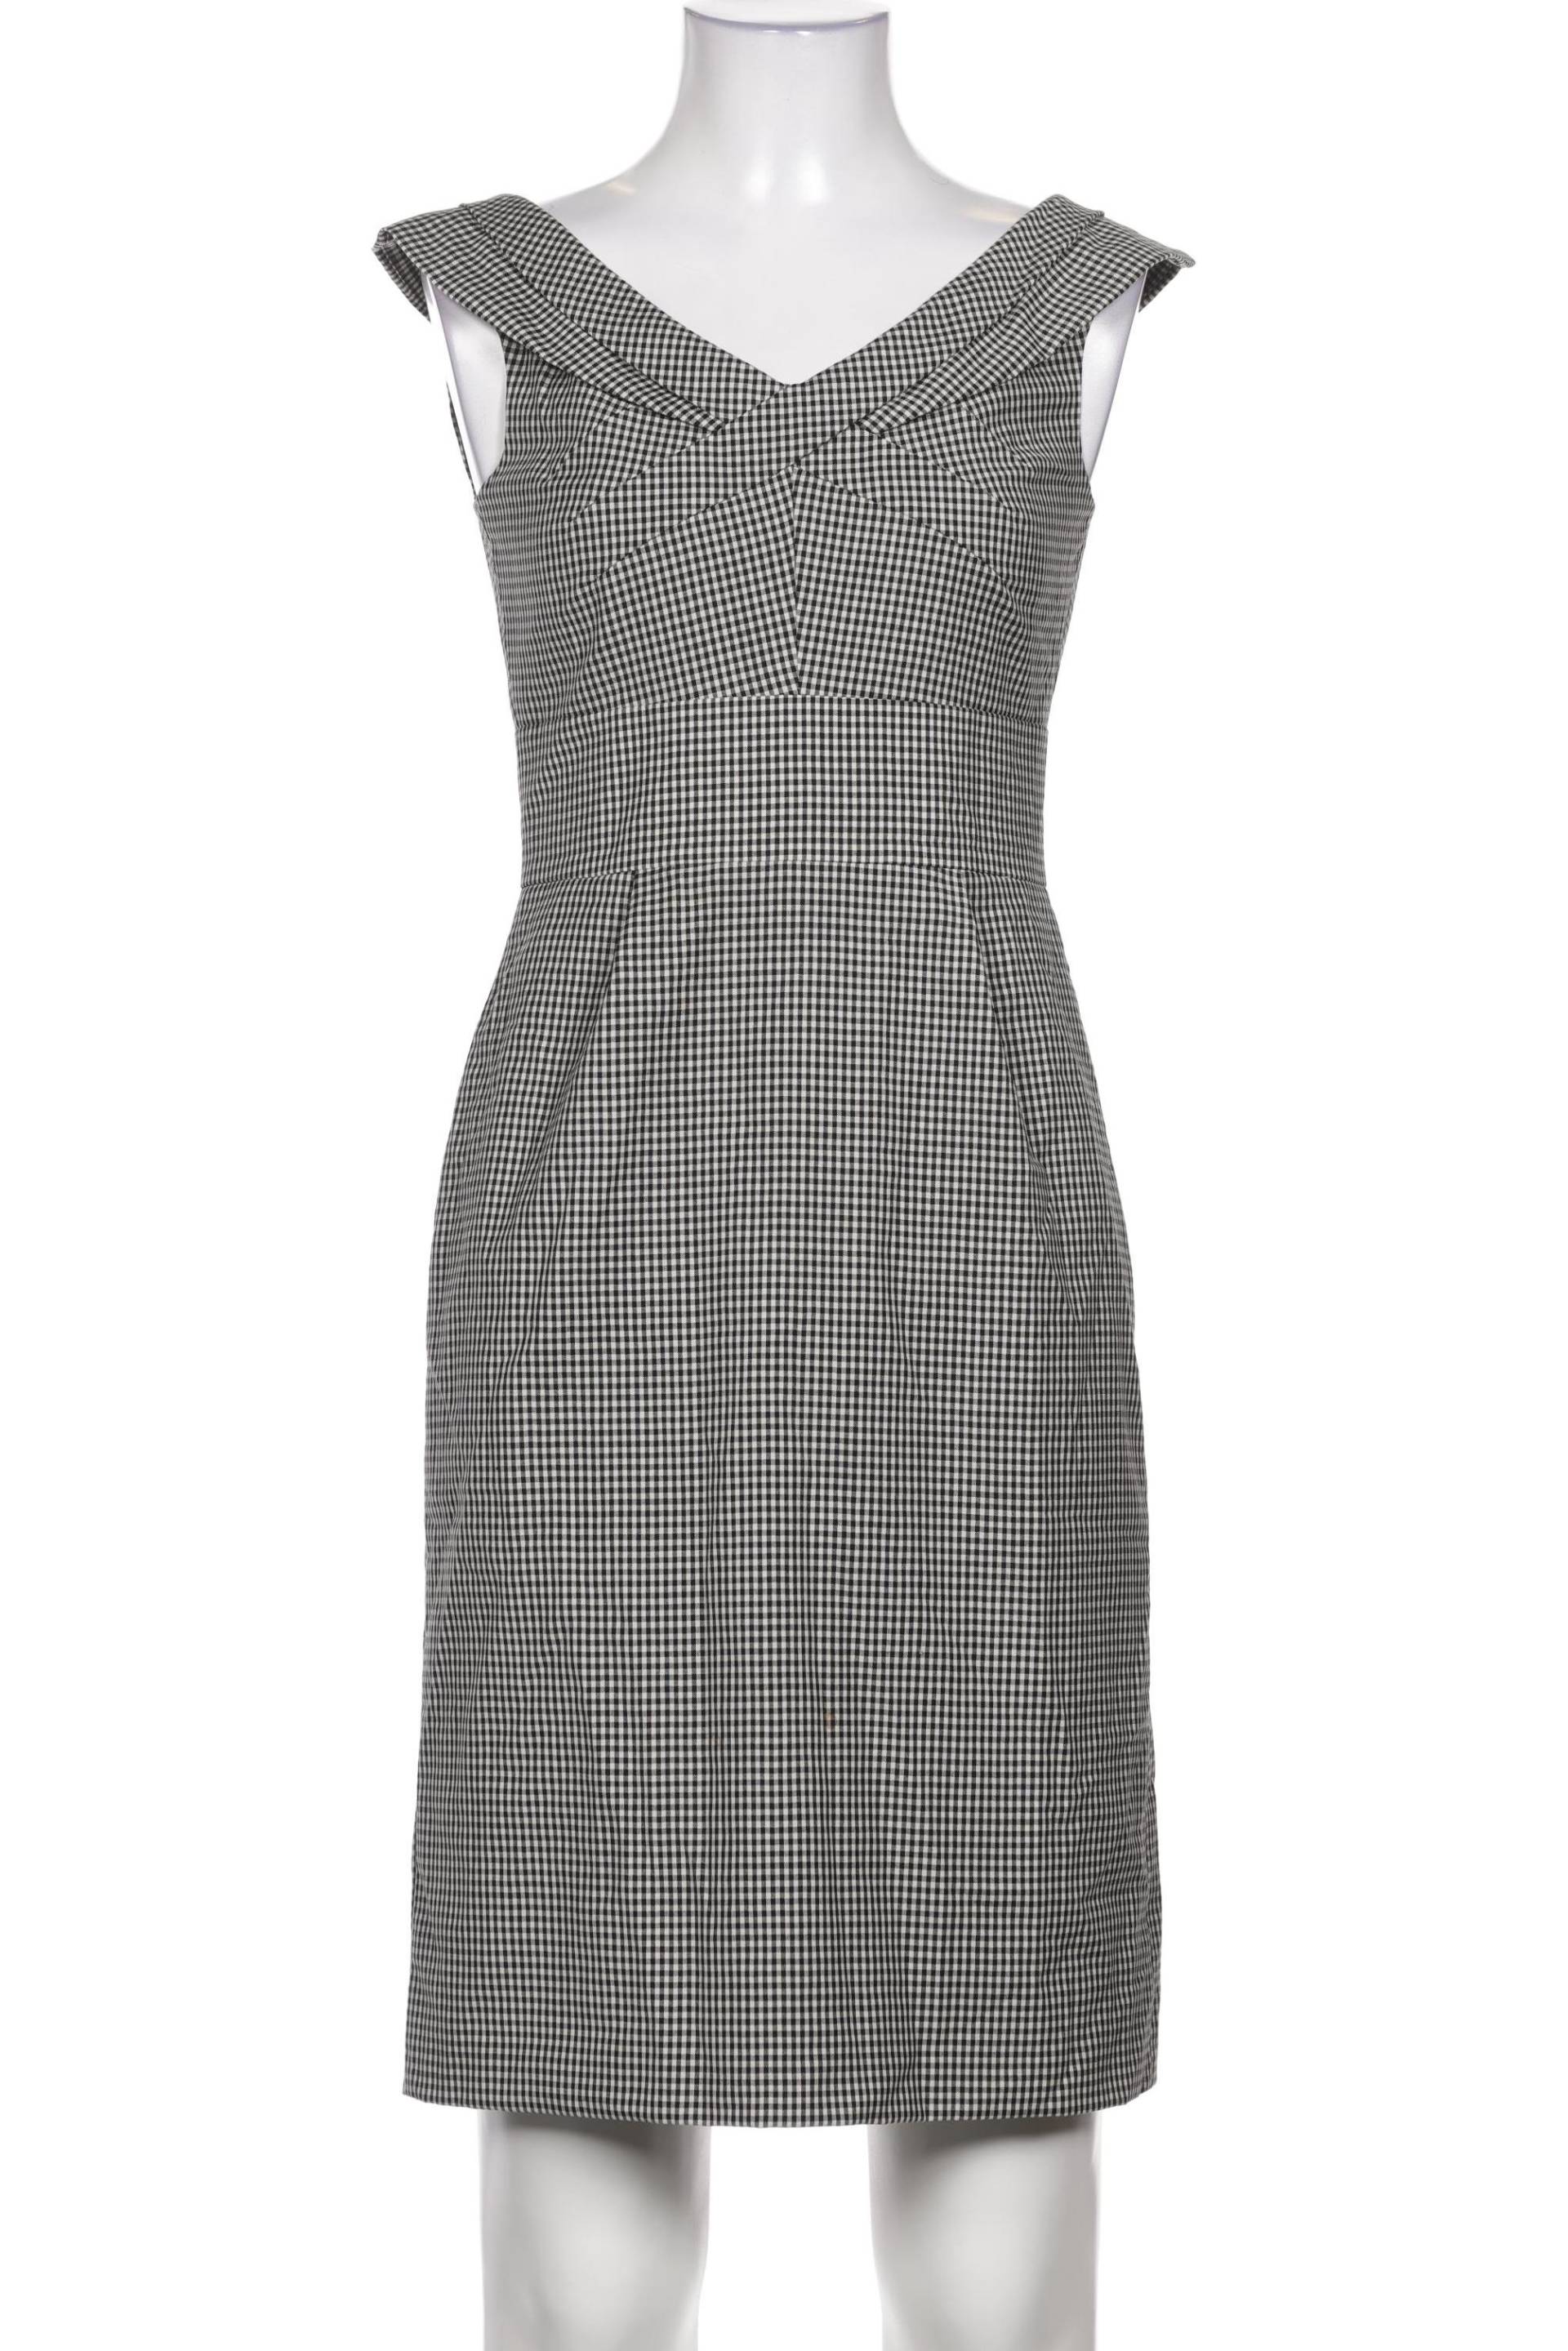 Strenesse Damen Kleid, grau, Gr. 36 von Strenesse